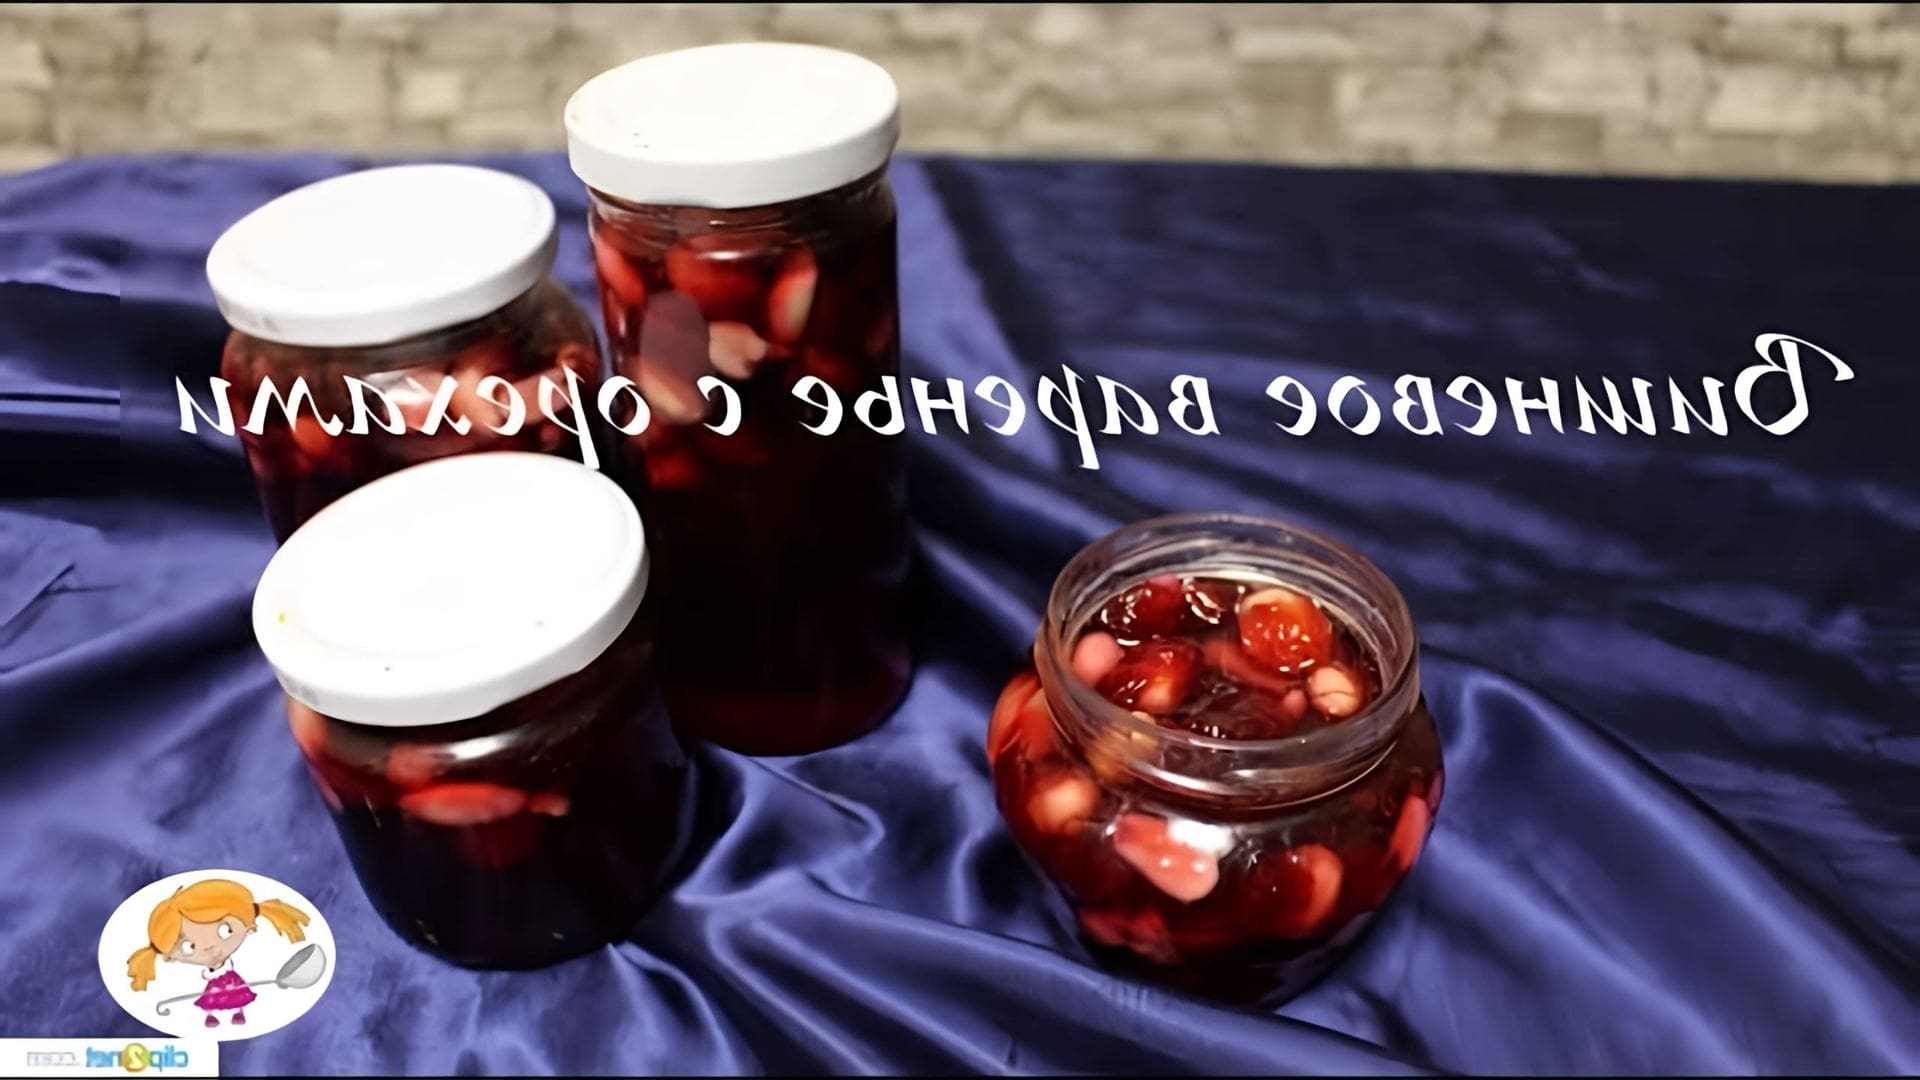 В этом видео Ольга готовит царское вишневое варенье с орехами